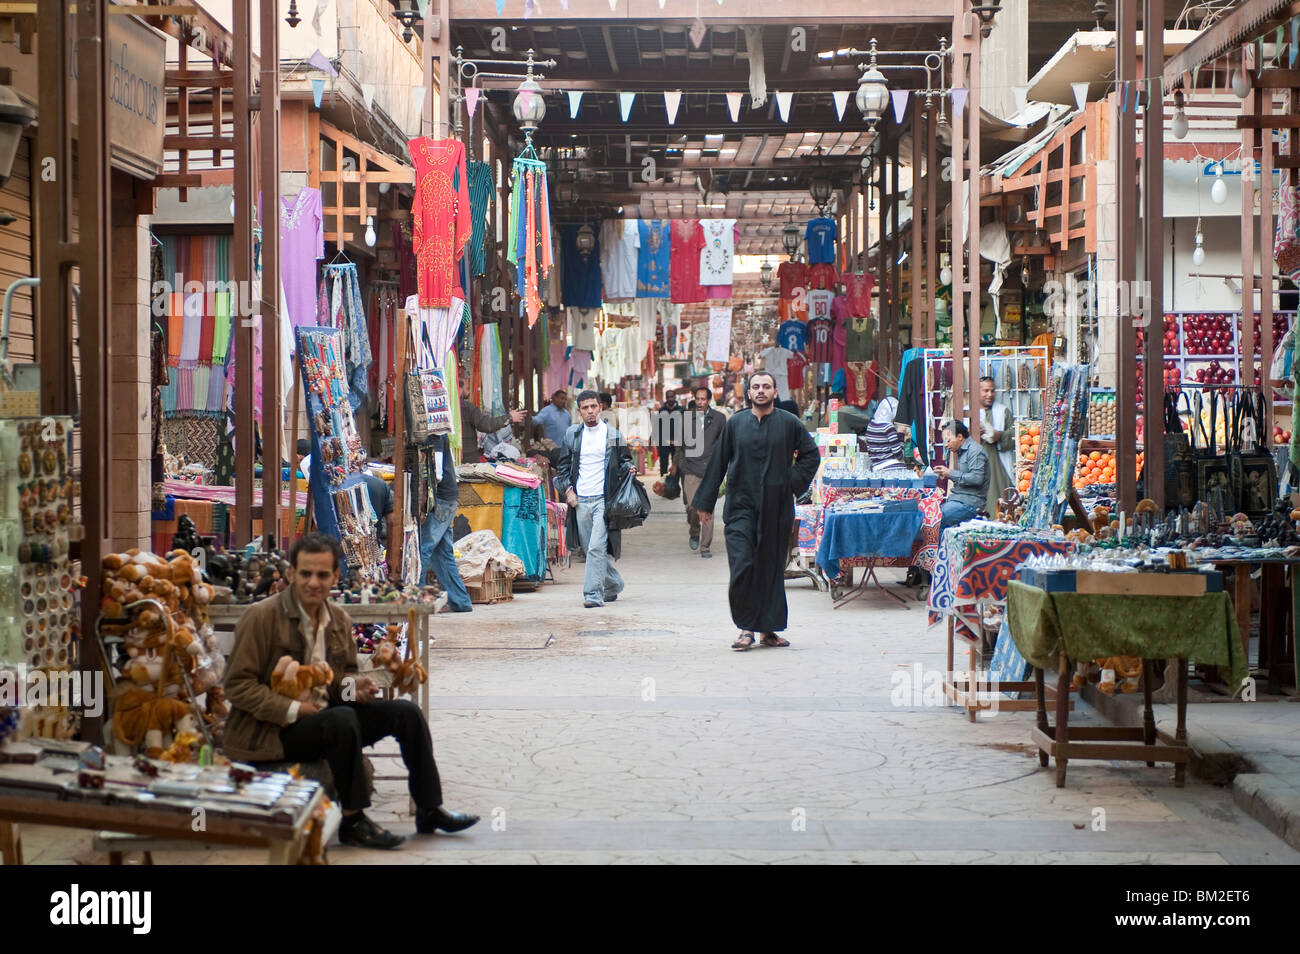 El Souk market, Luxor, Egypt Stock Photo